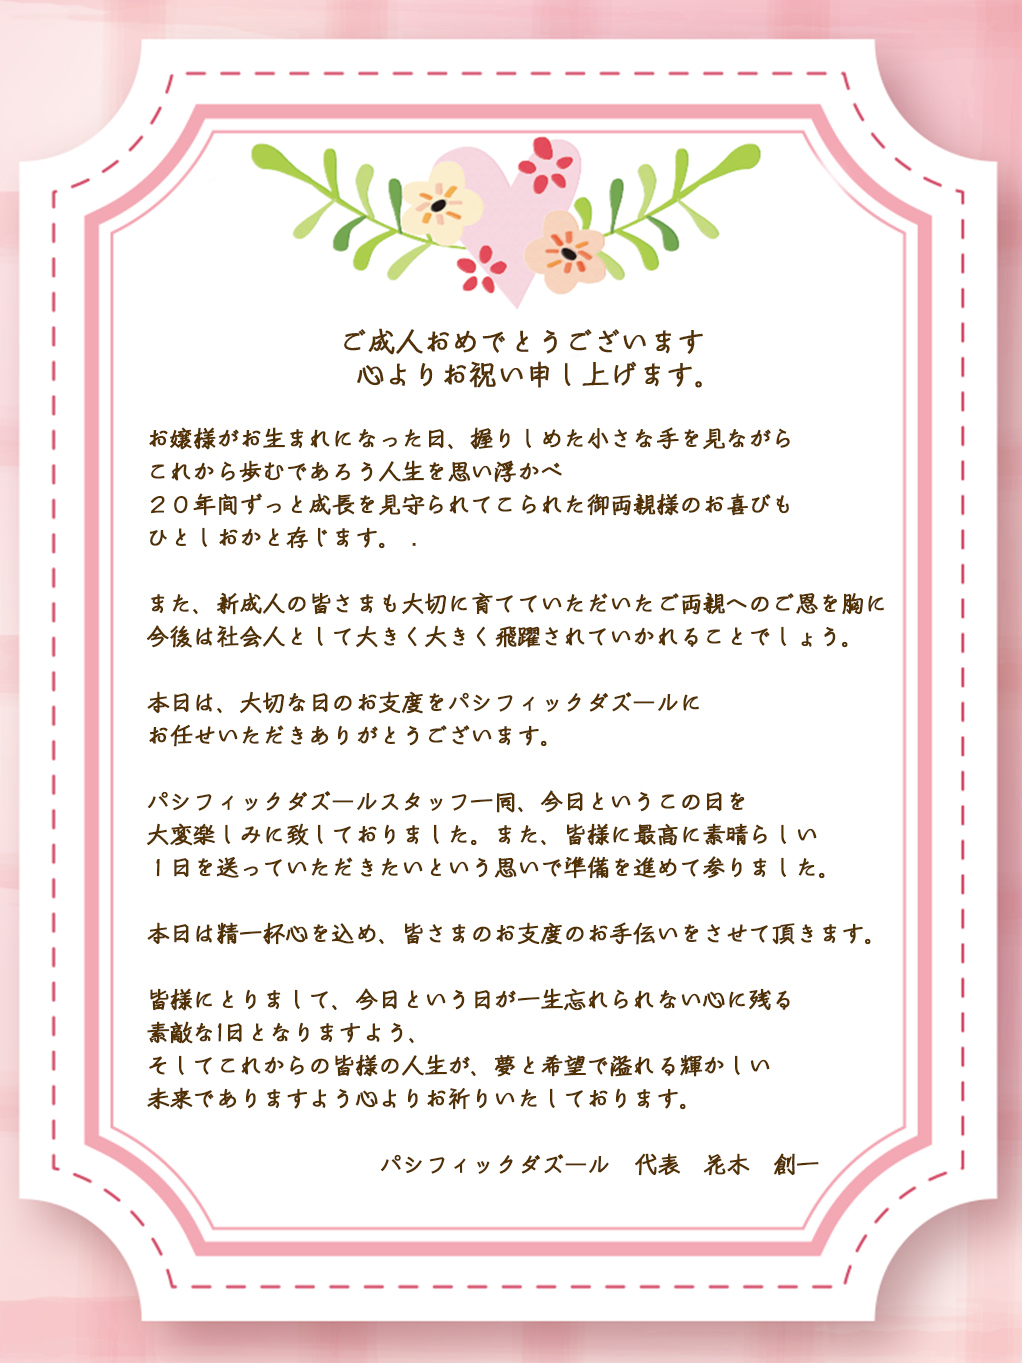 新成人の皆様へお祝いメッセージ 神戸の美容院パシフィックダズール 三宮 元町 西区 垂水区